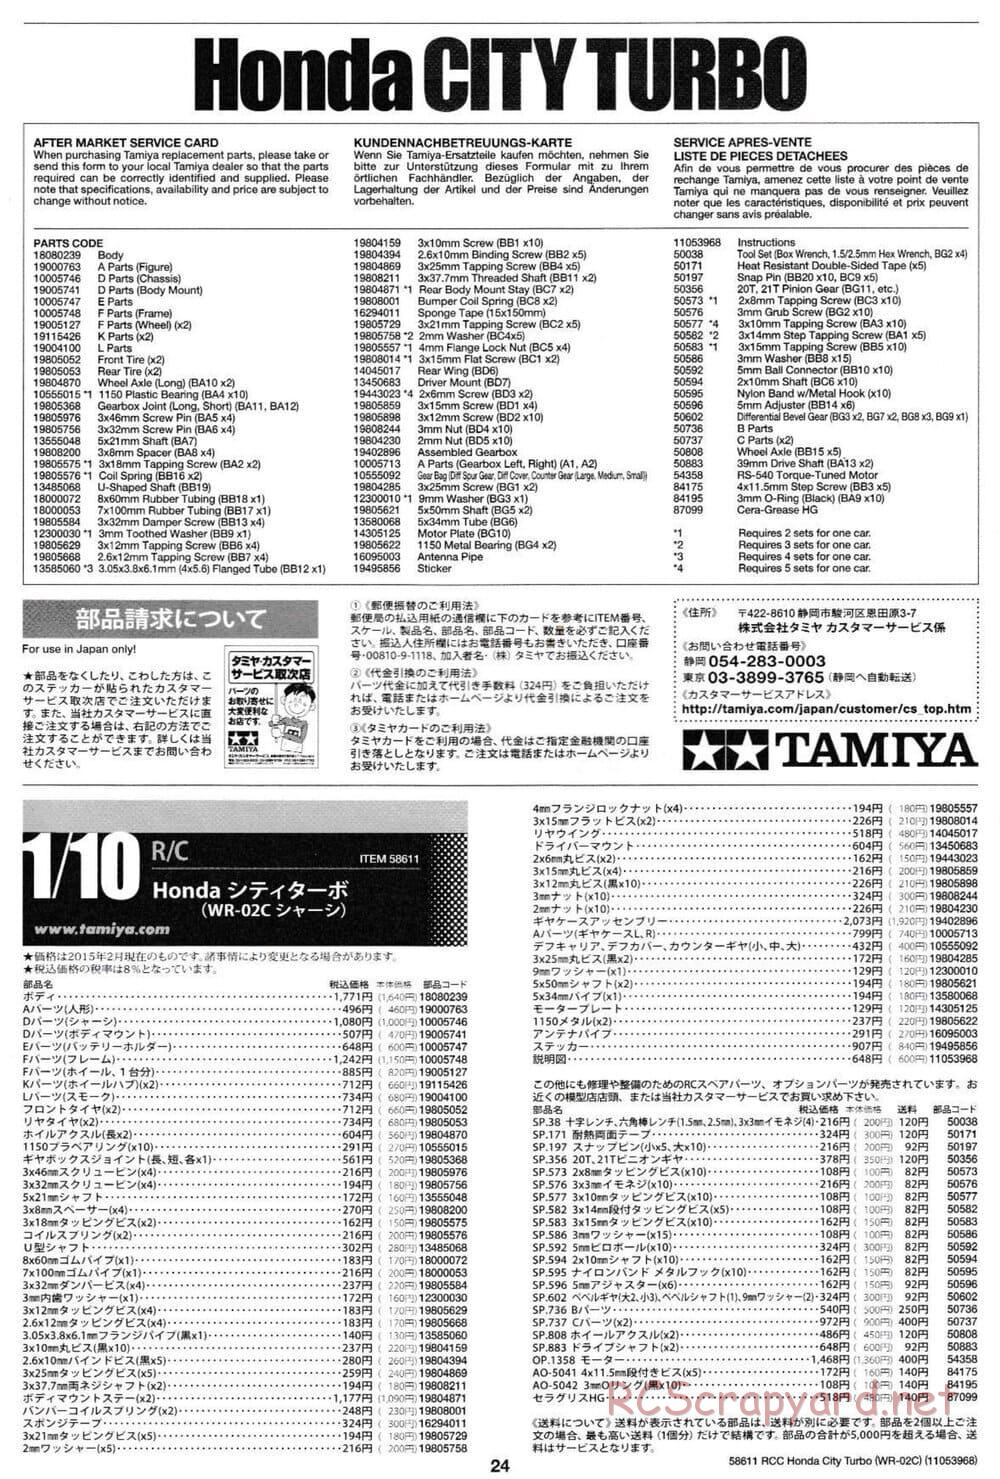 Tamiya - Honda City Turbo - WR-02C Chassis - Manual - Page 24